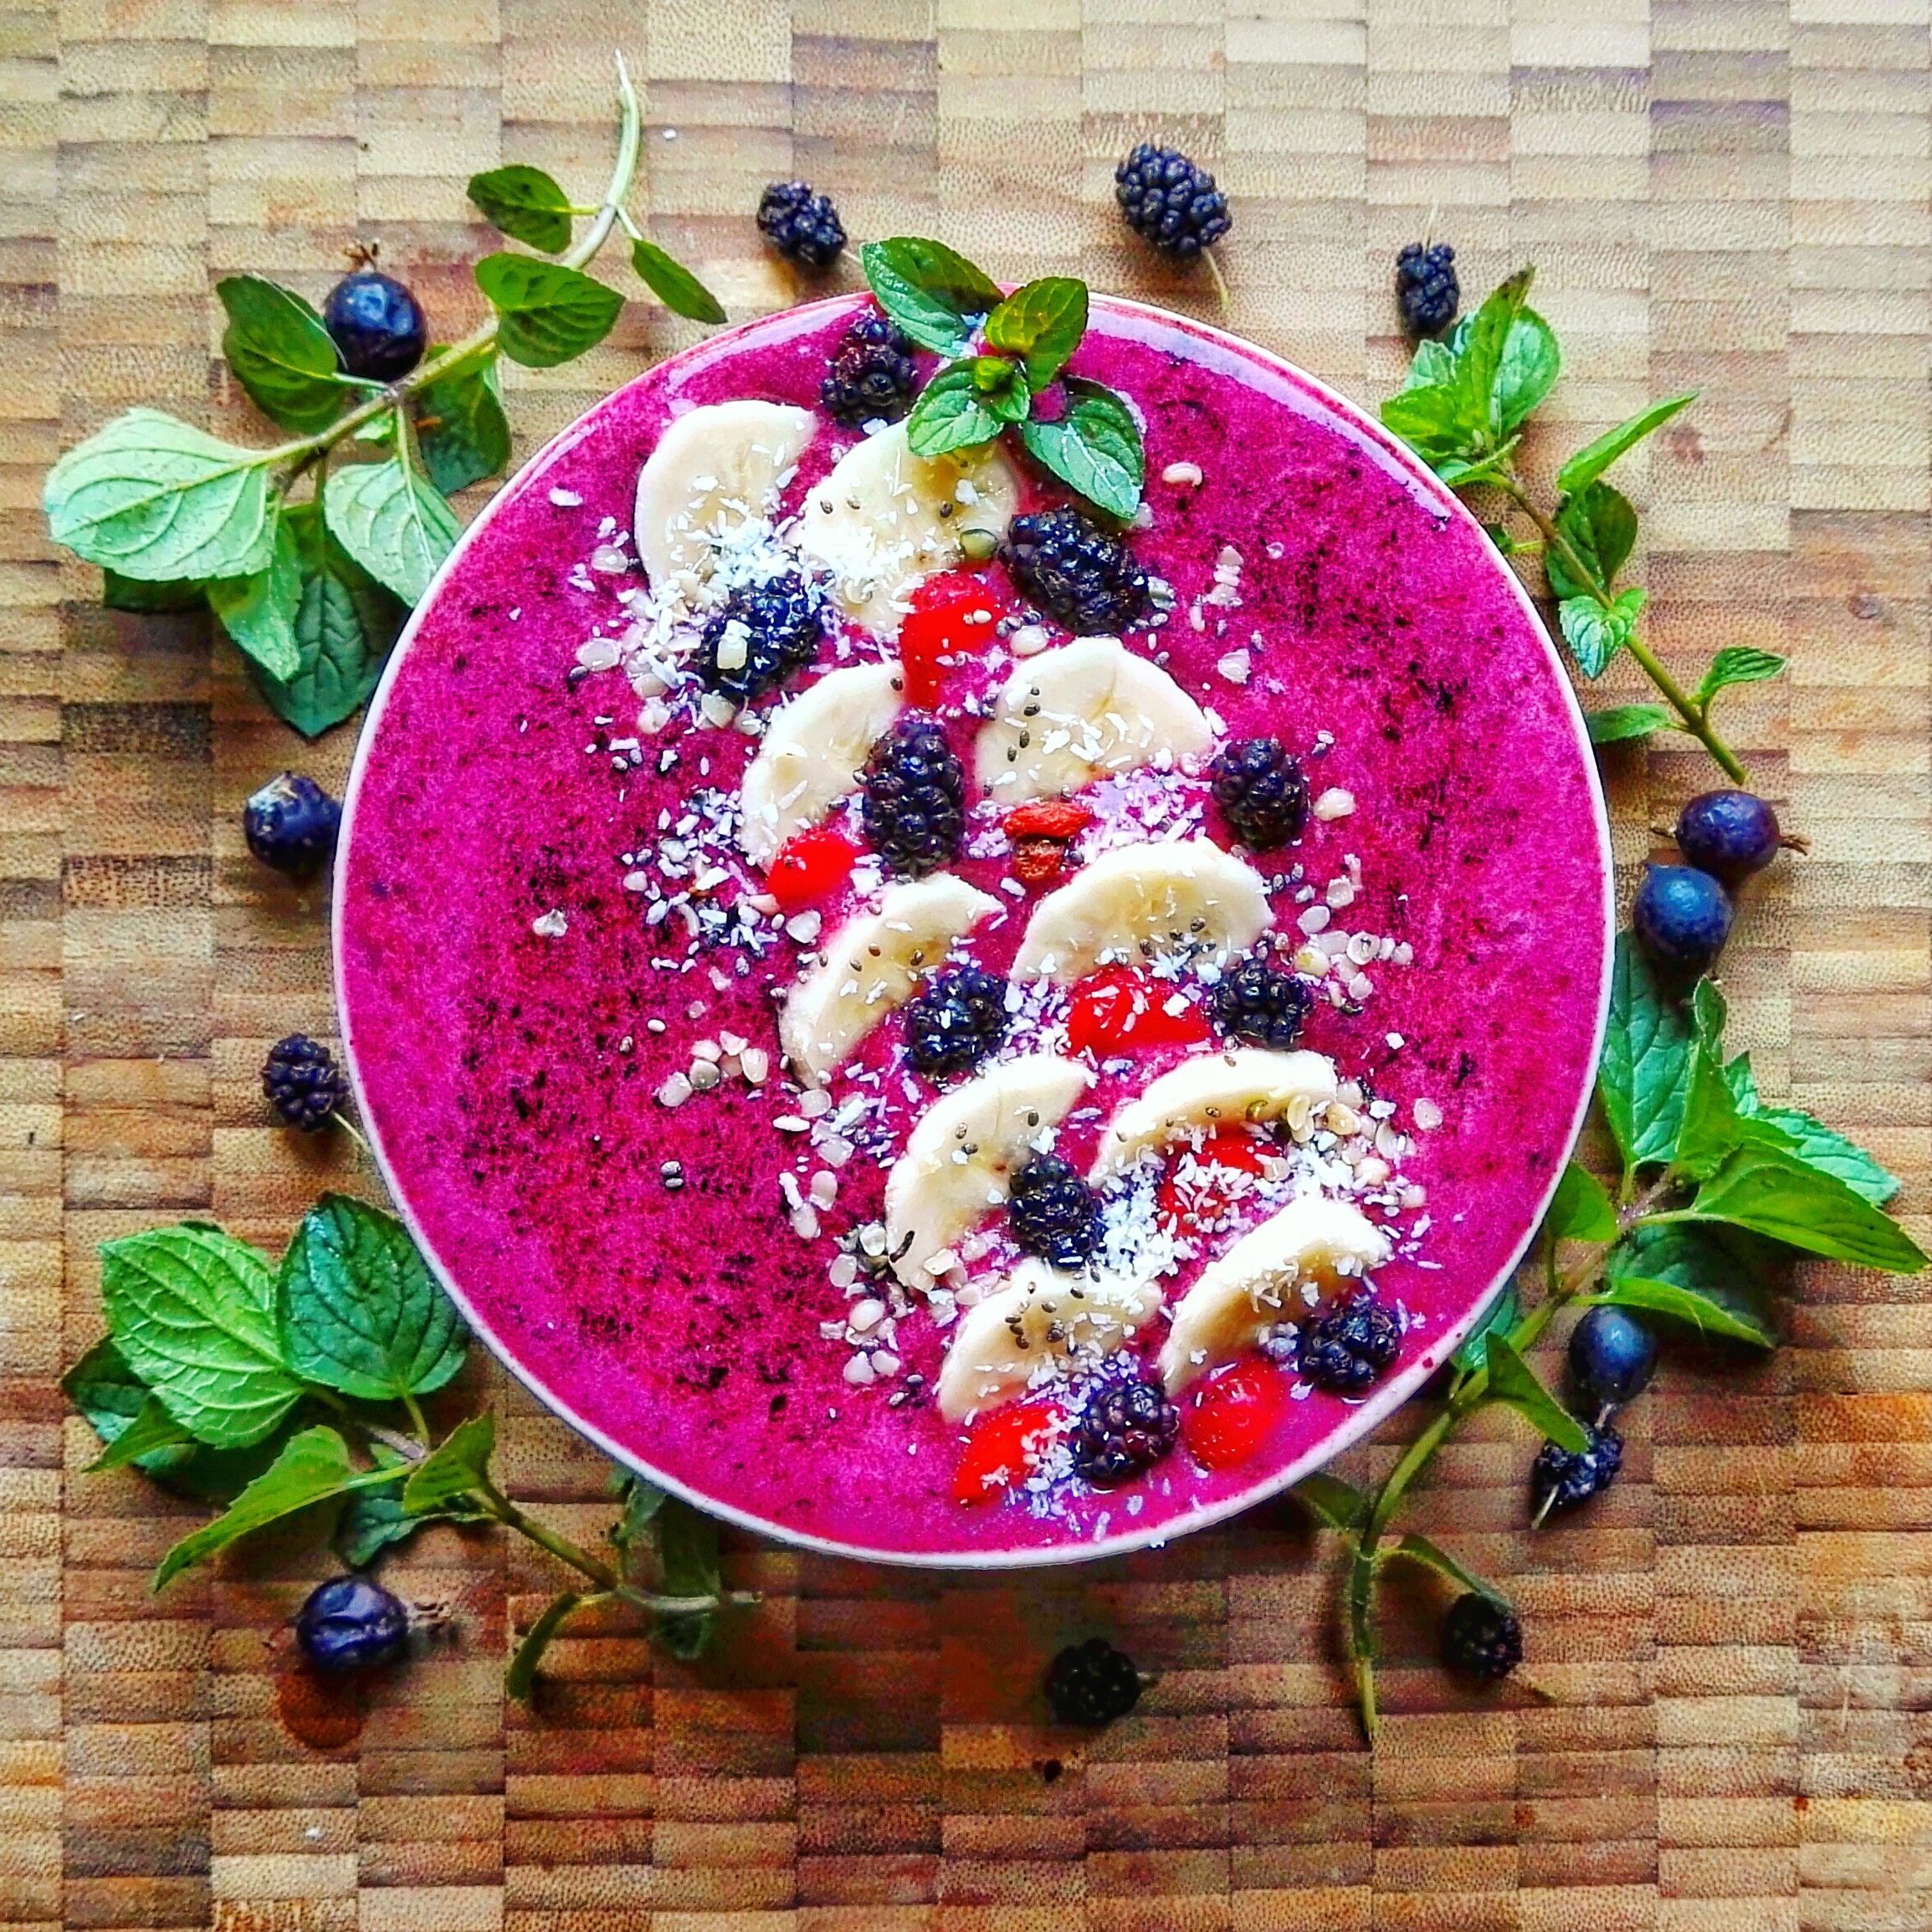 Foodblogerka Klaudia: Keď som pridala prvú fotku na Instagram, nečakala som, že mi to prinesie spolupráce a prácu, ktorú milujem